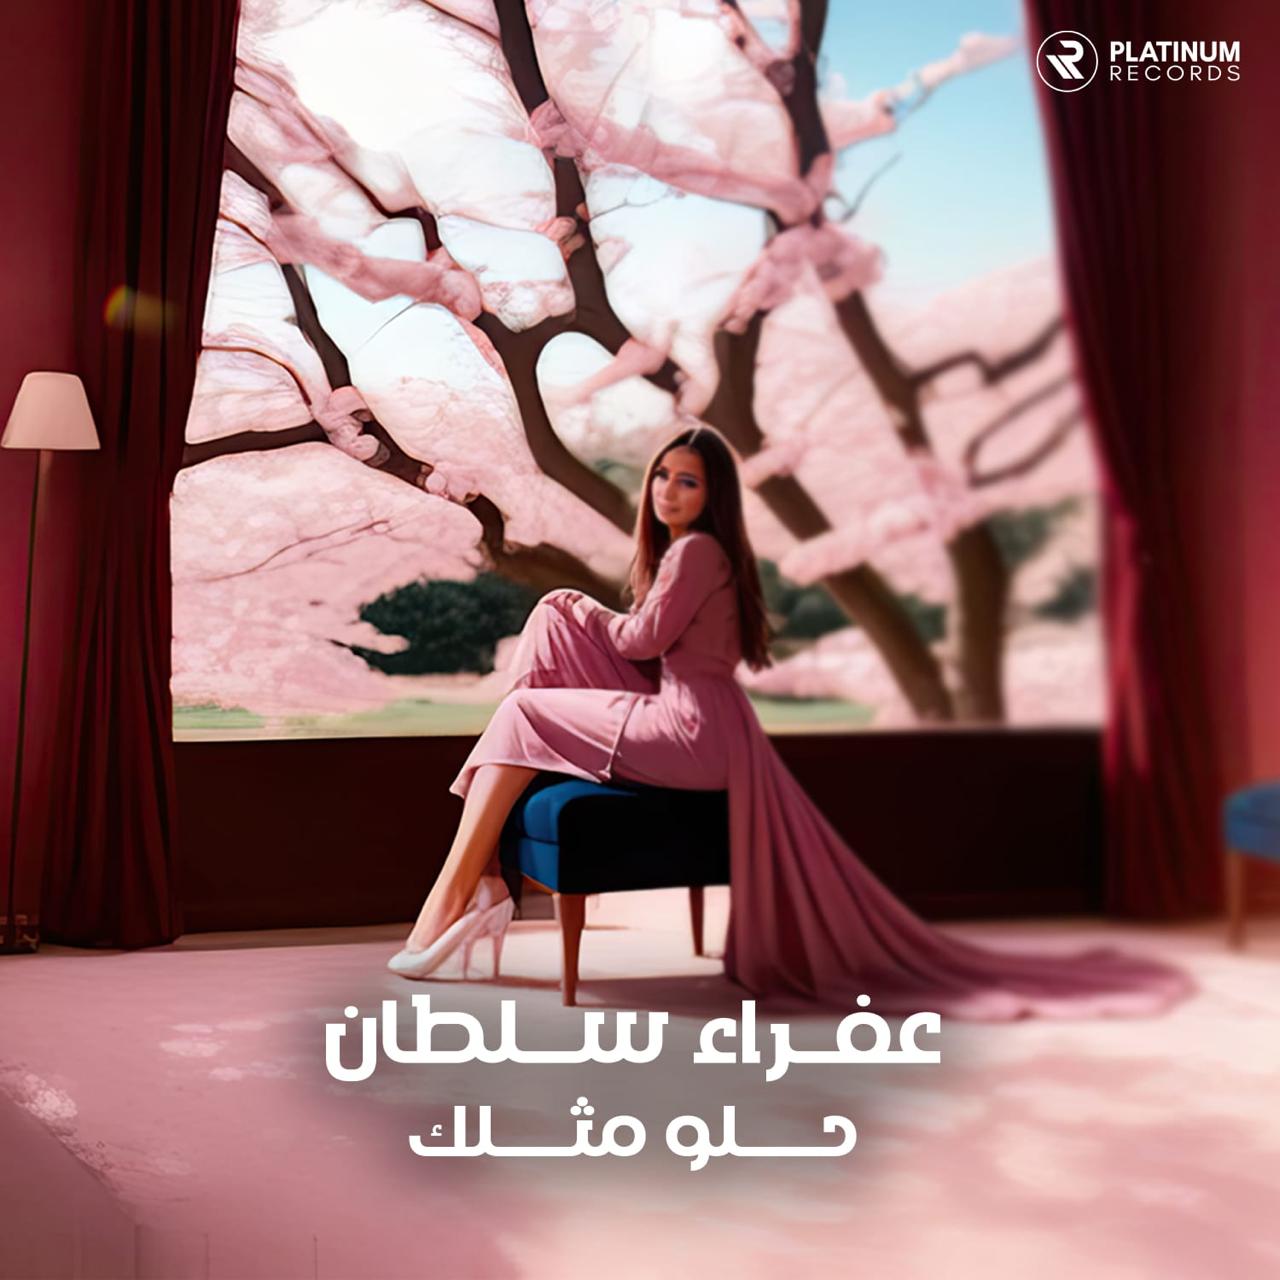 جديد "محبوبة العراق "عفراء سلطان أغنية وفيديو كليب "حلو مثلك "